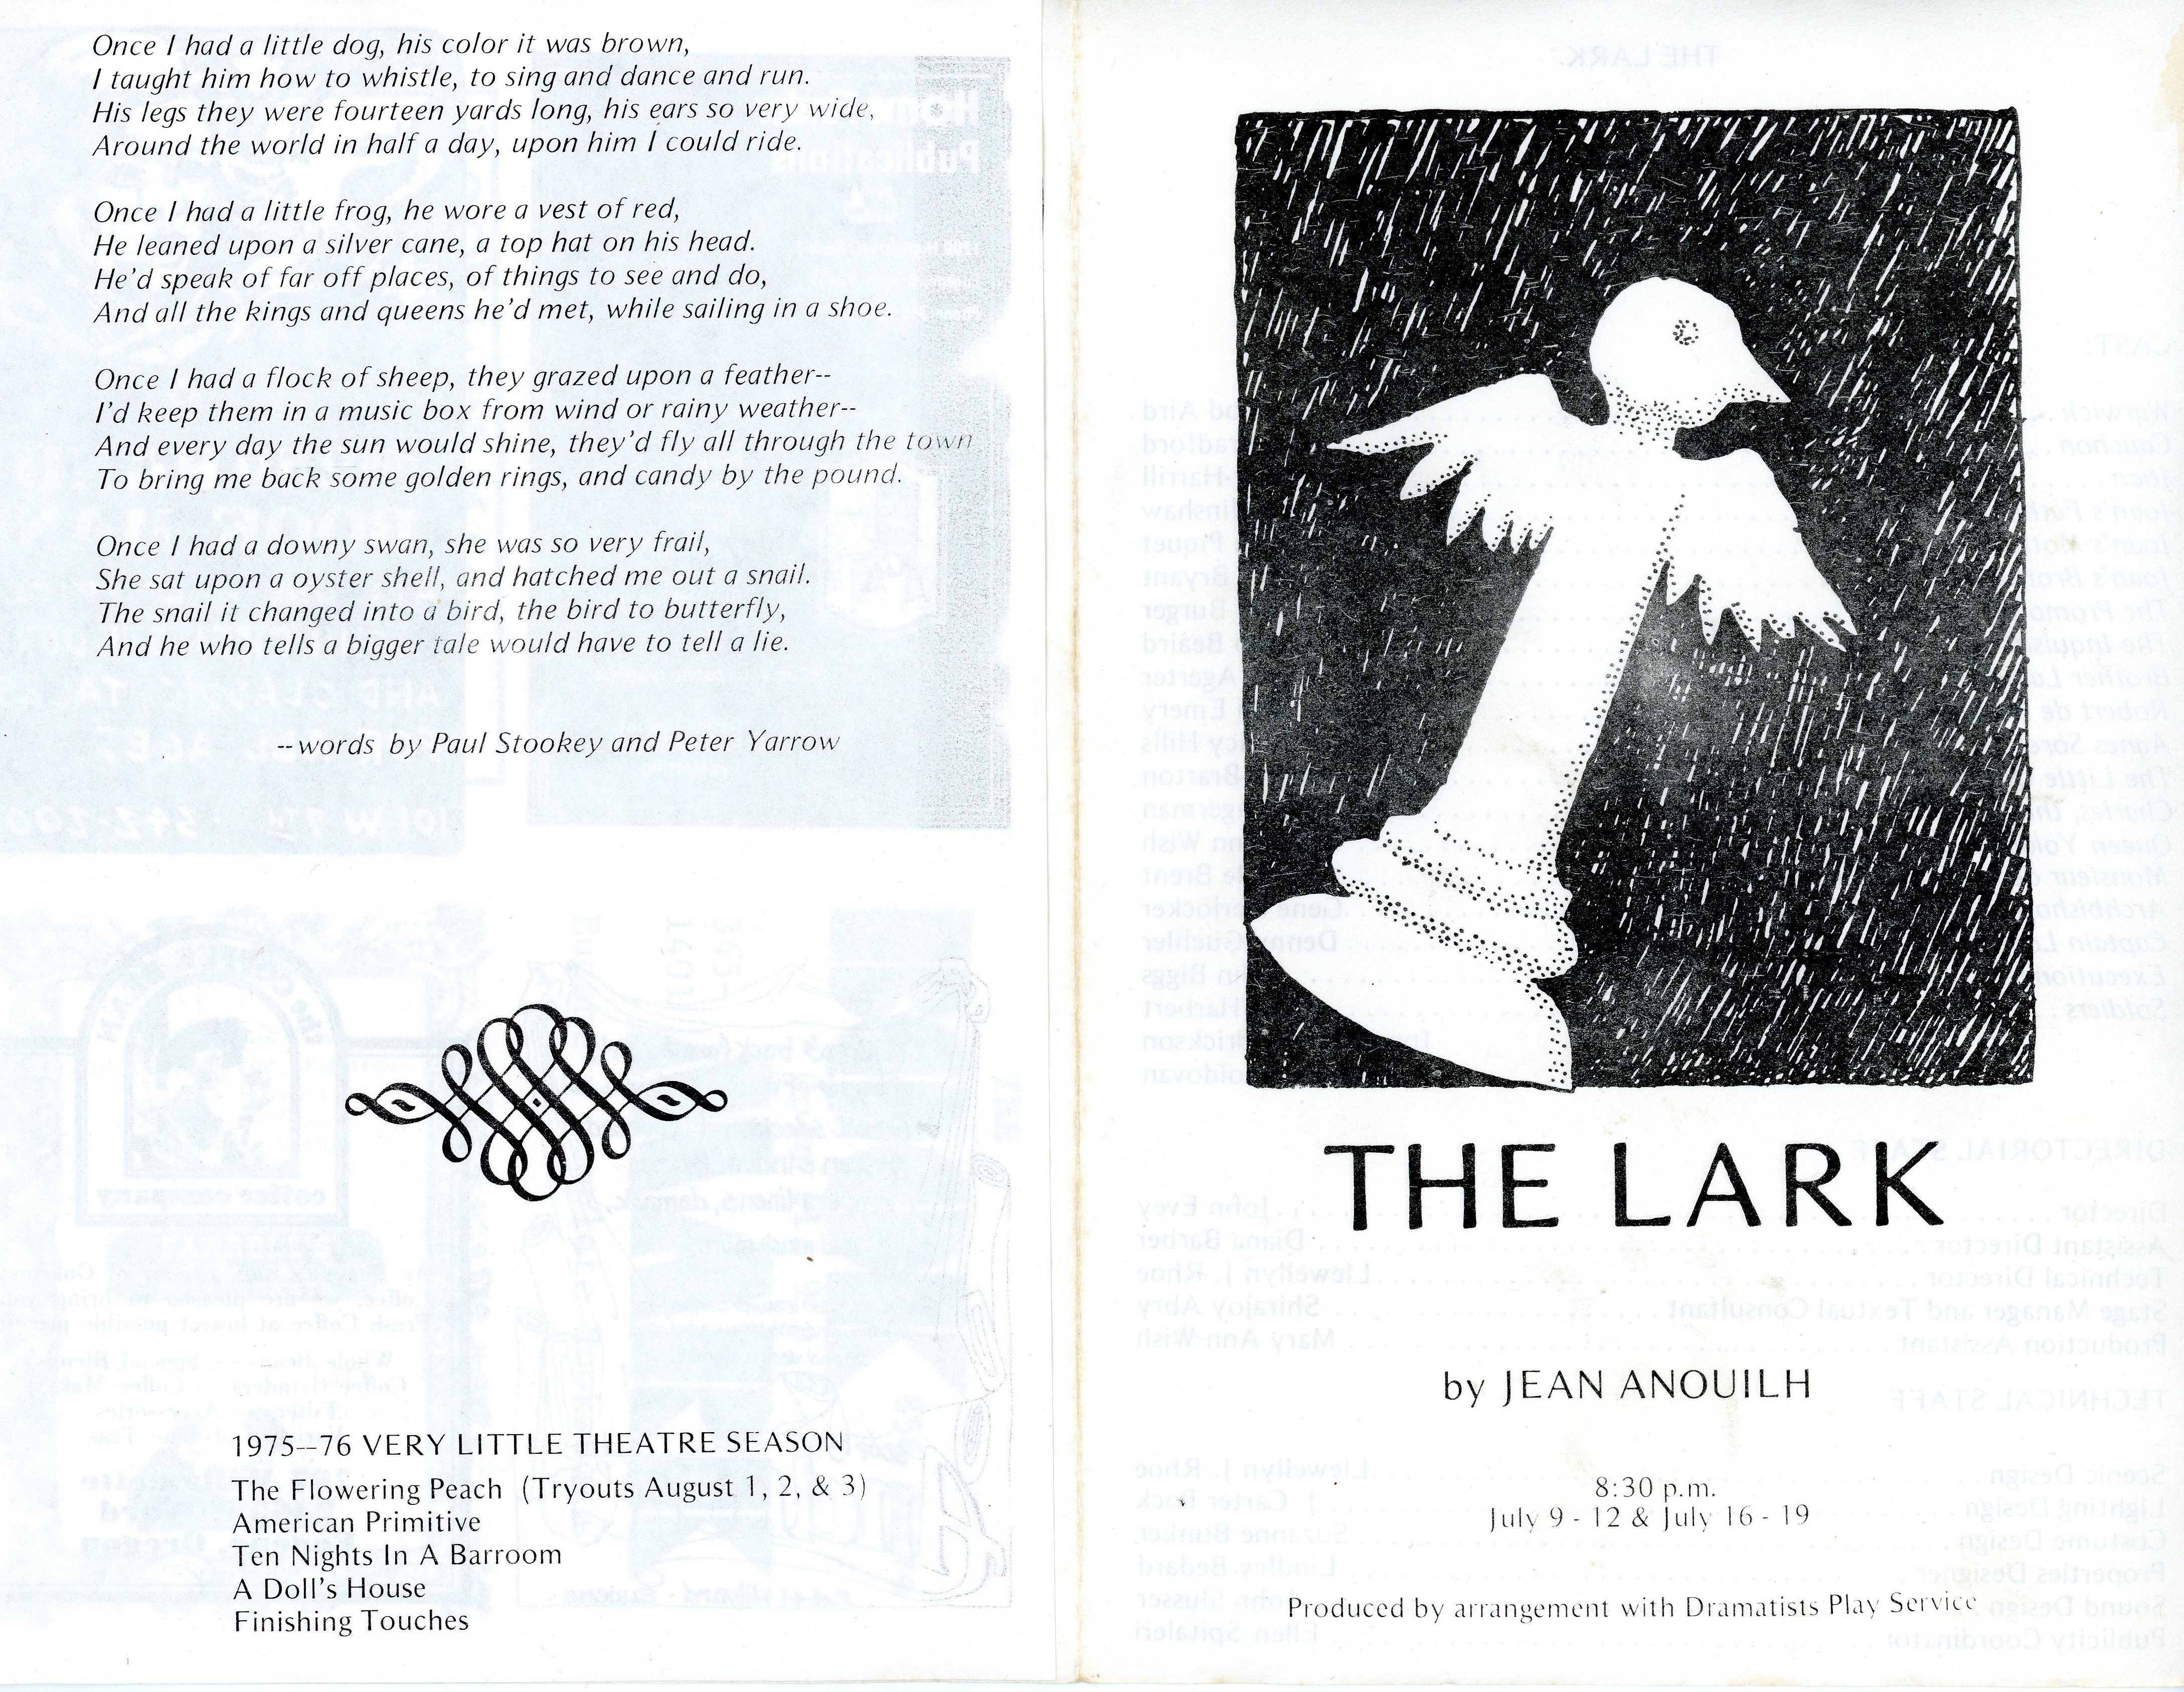 VLT - The Lark